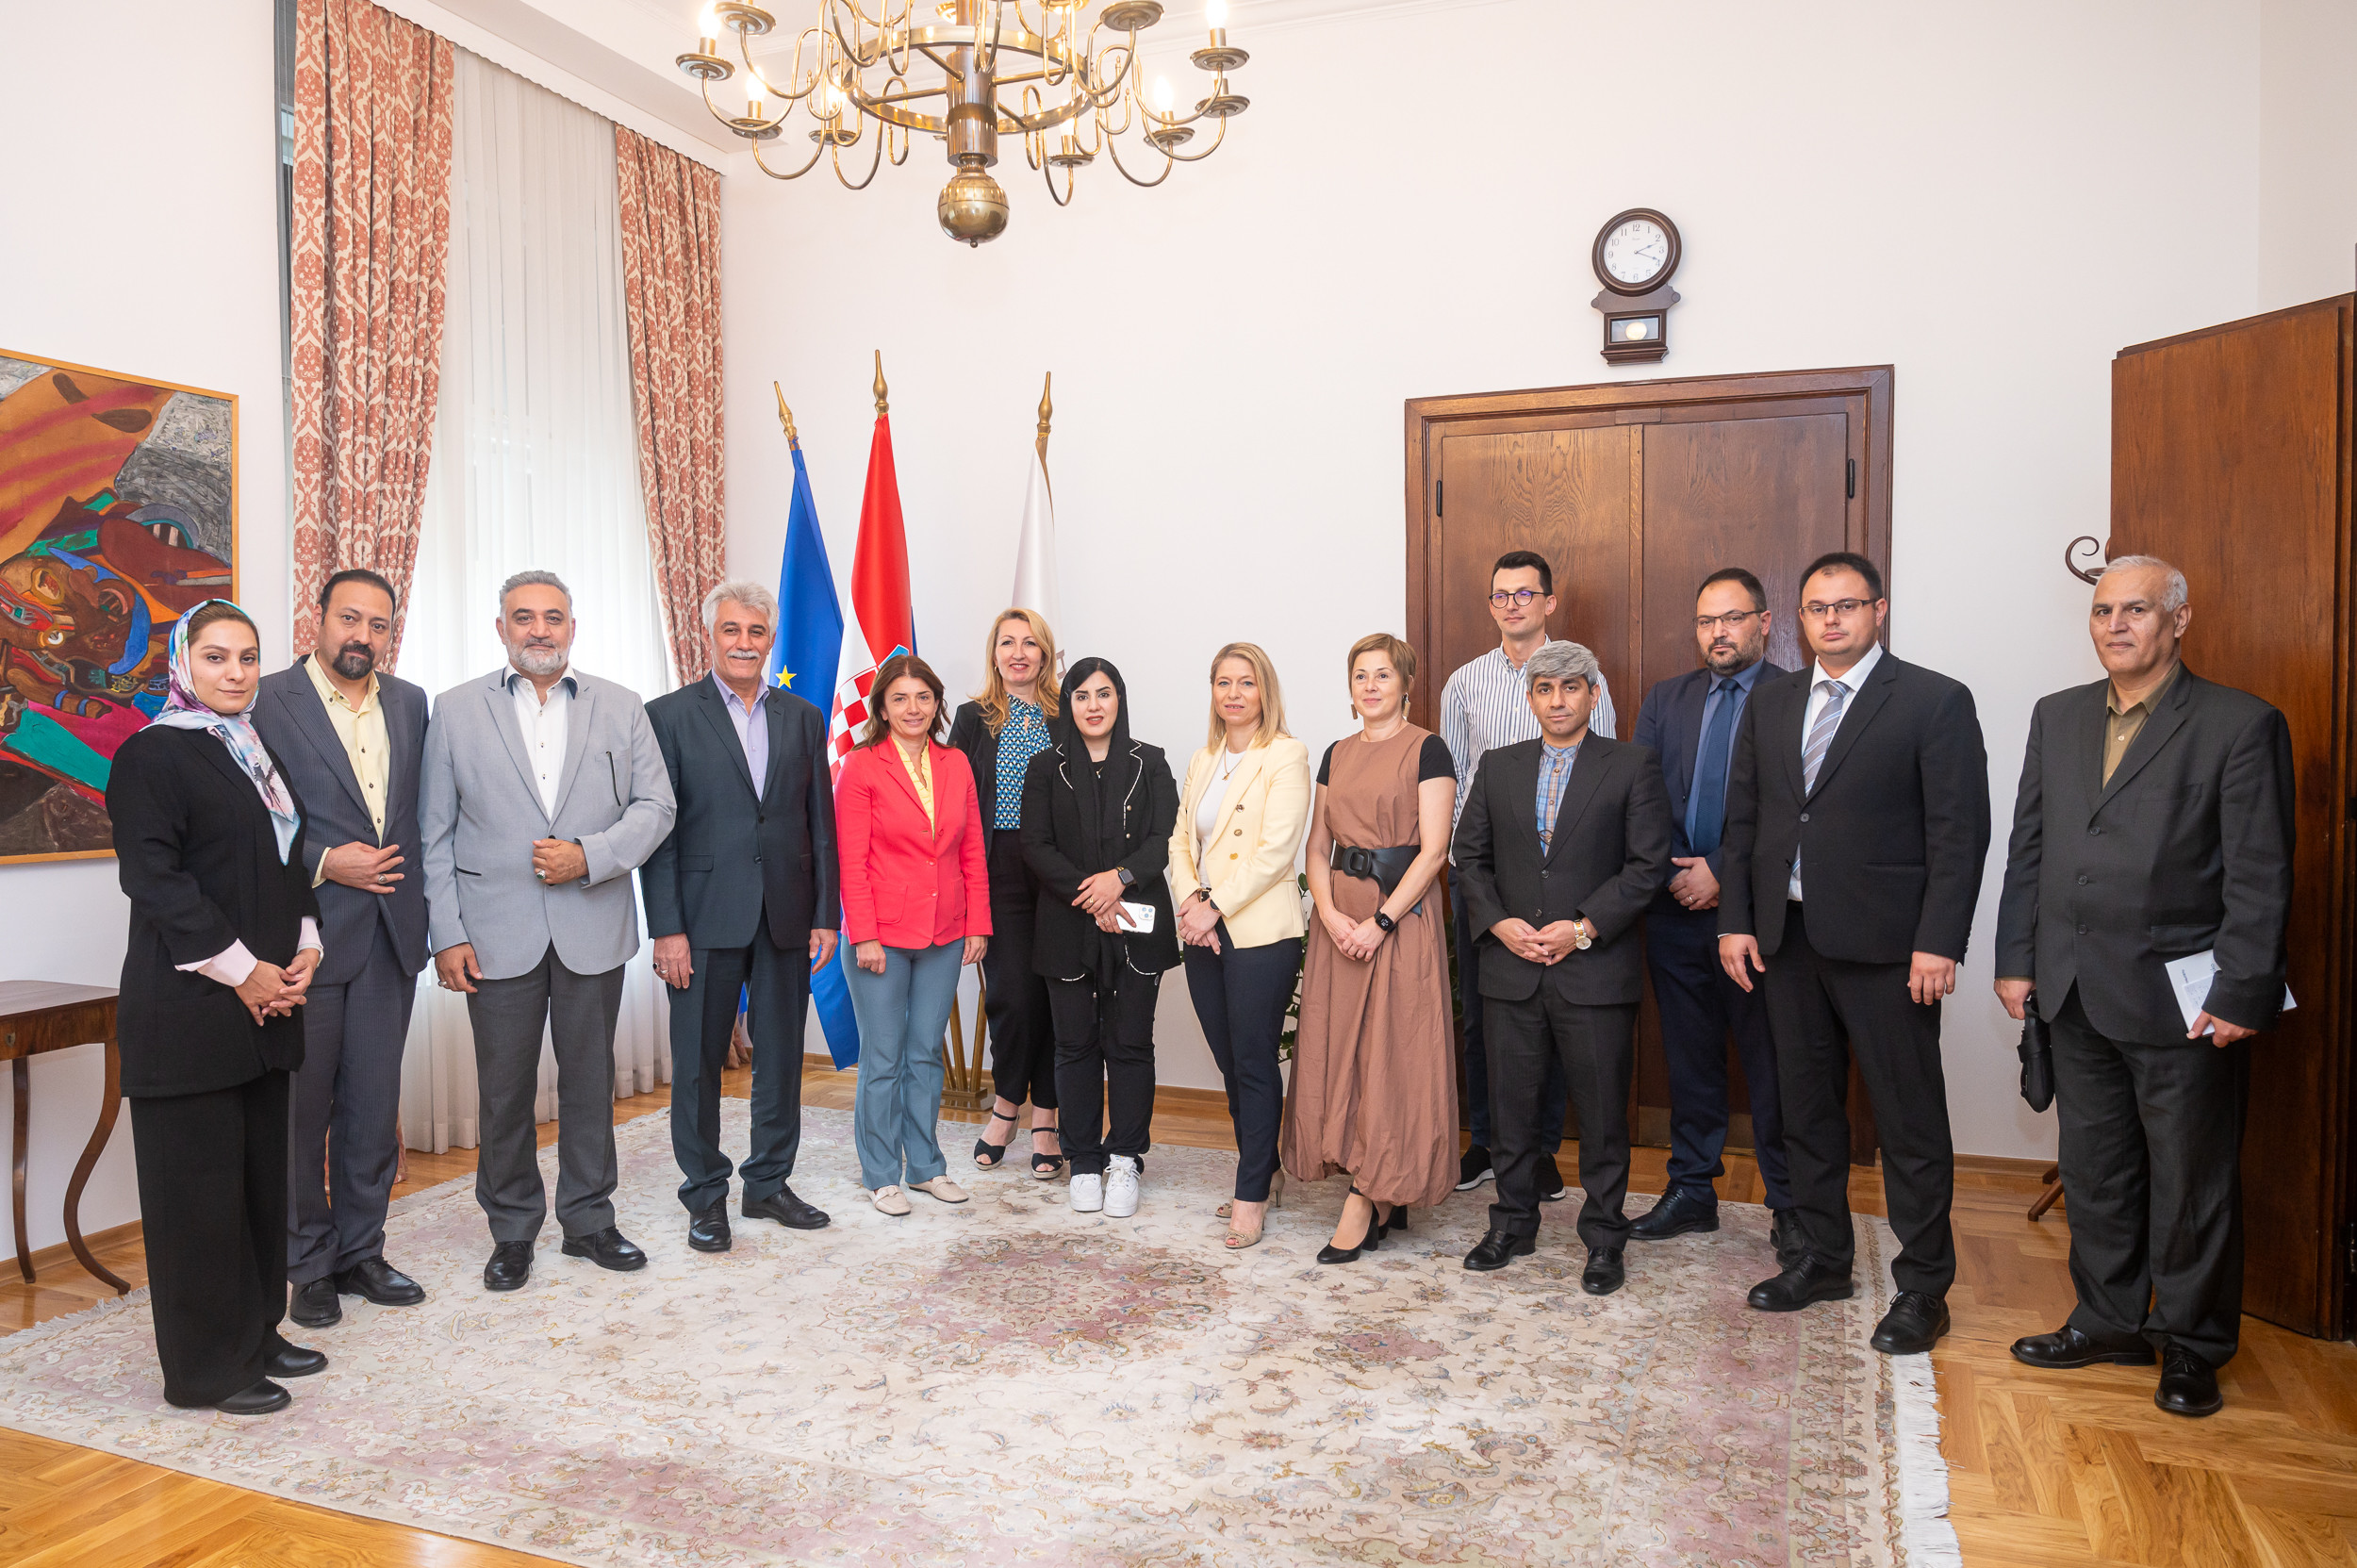 Iranska delegacija u posjeti Hrvatskoj gospodarskoj komori